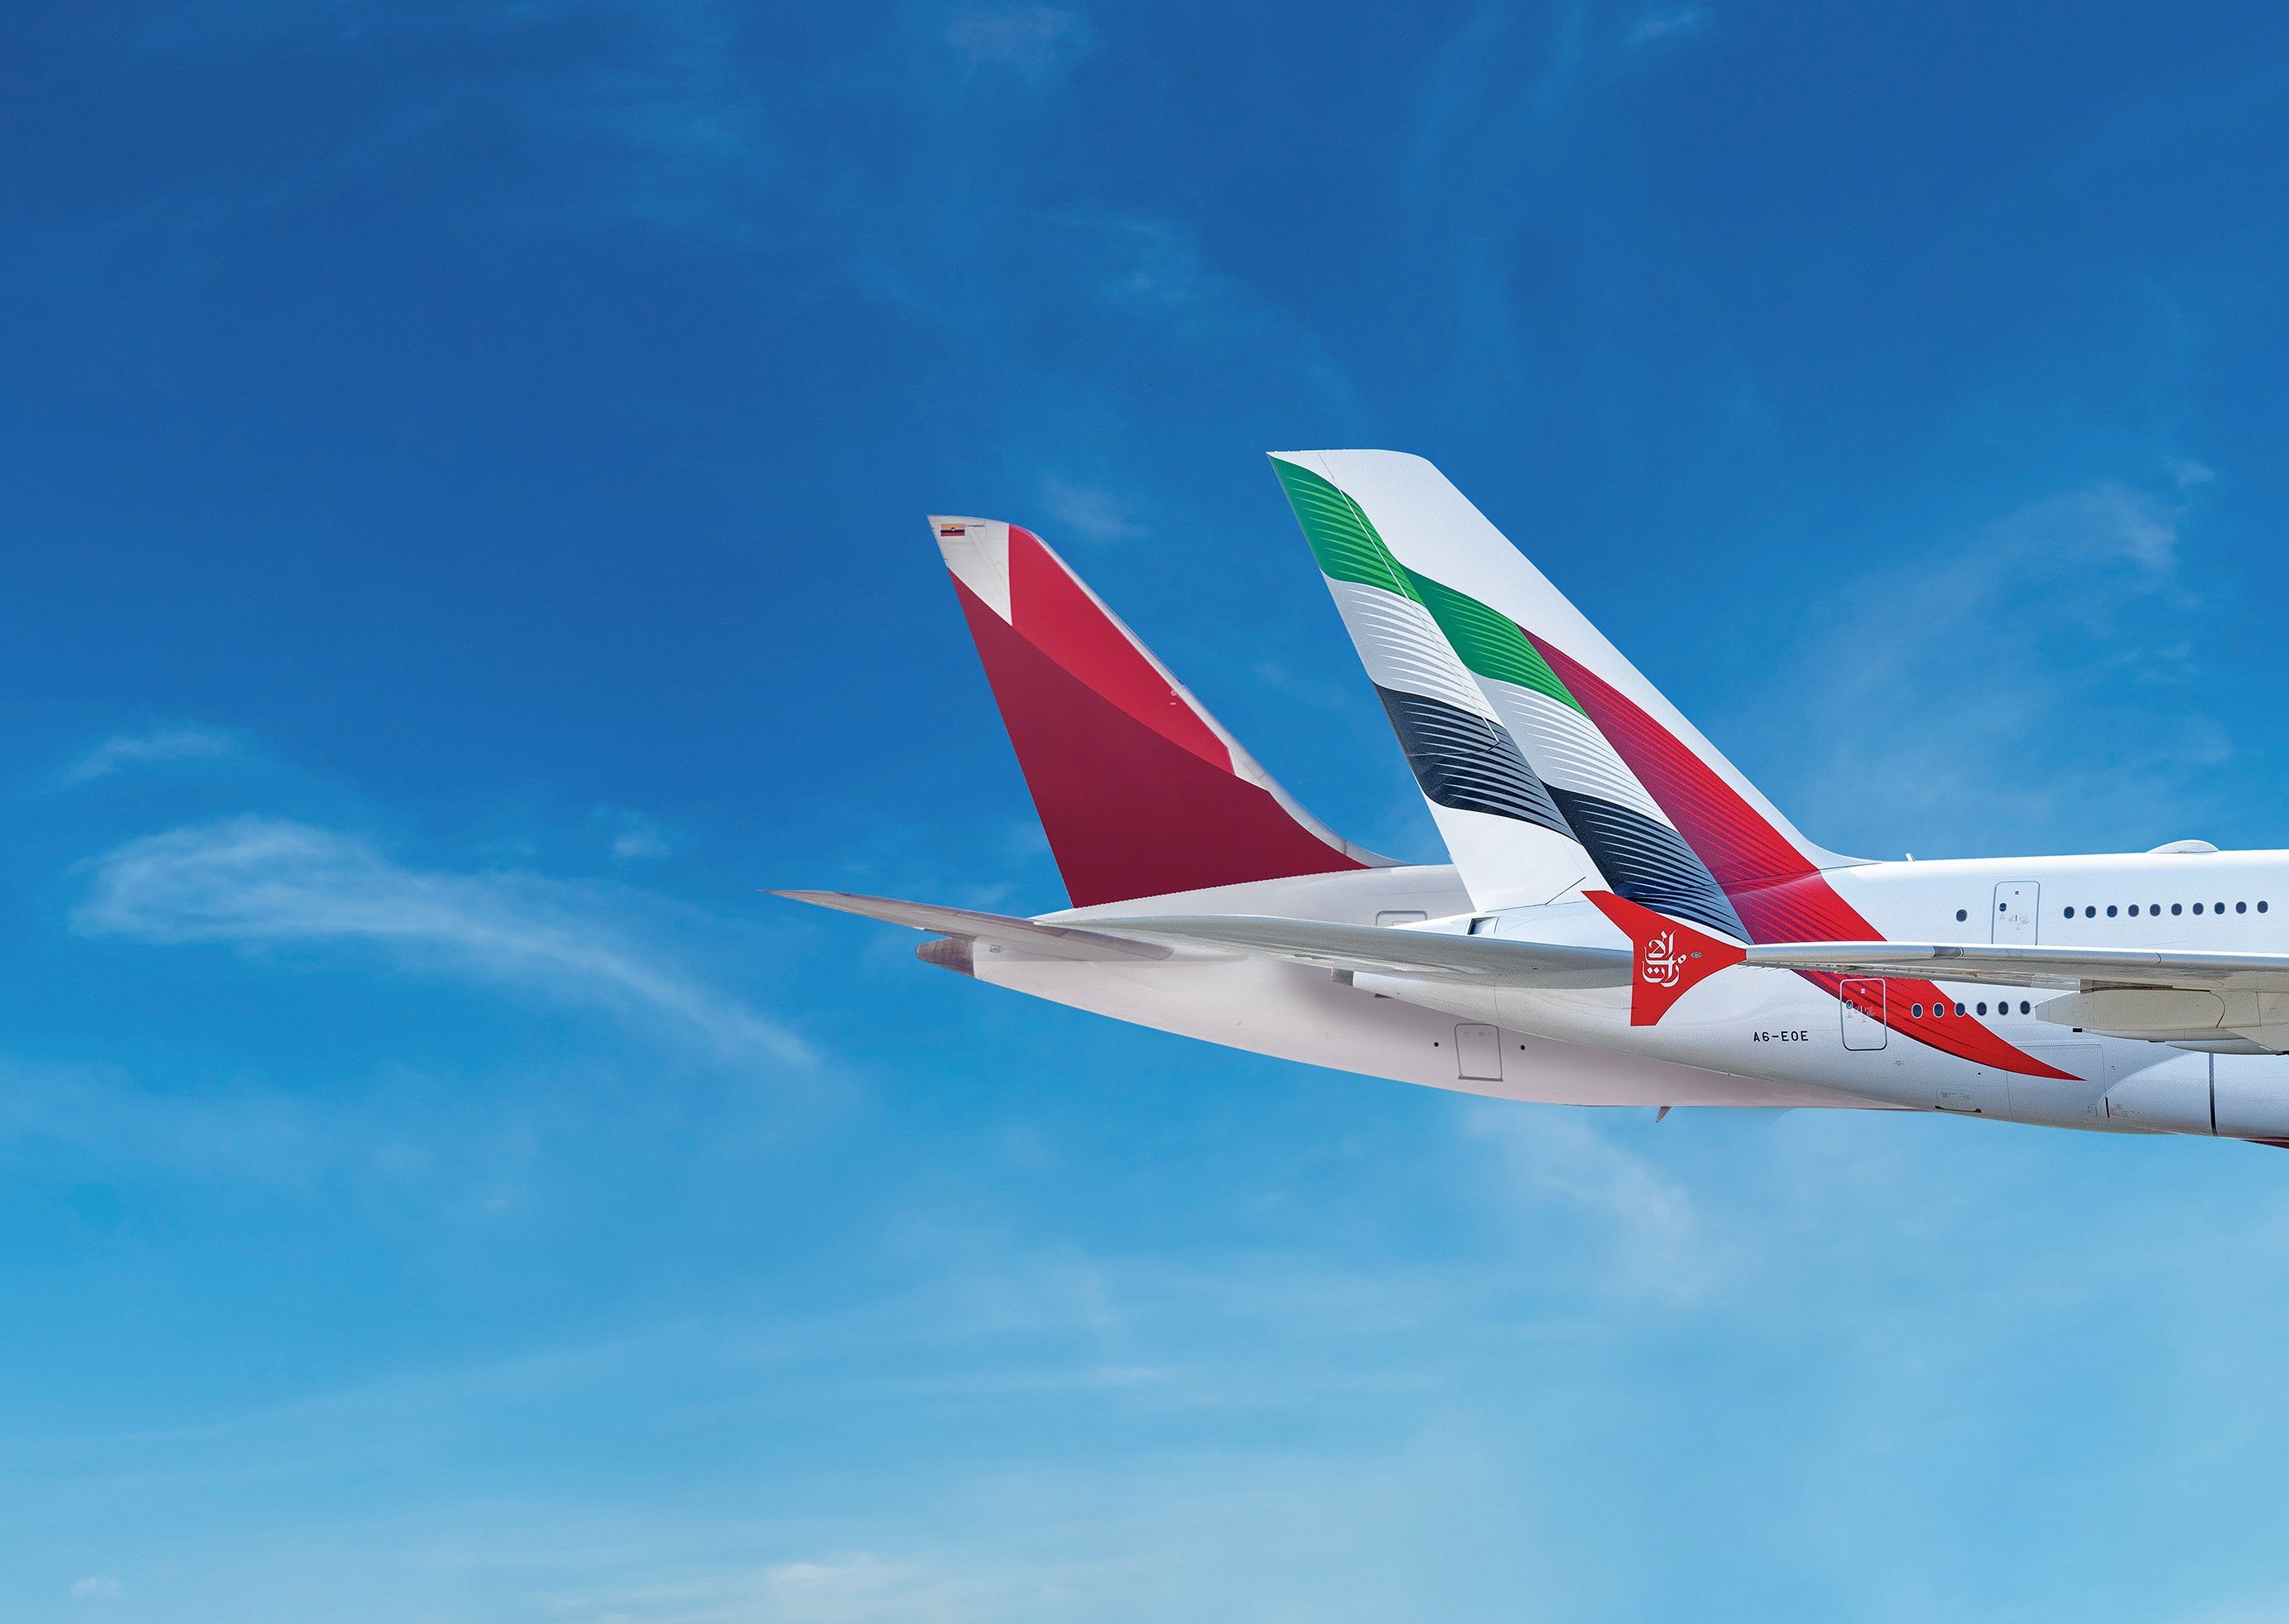 avianca and Emirates aircraft